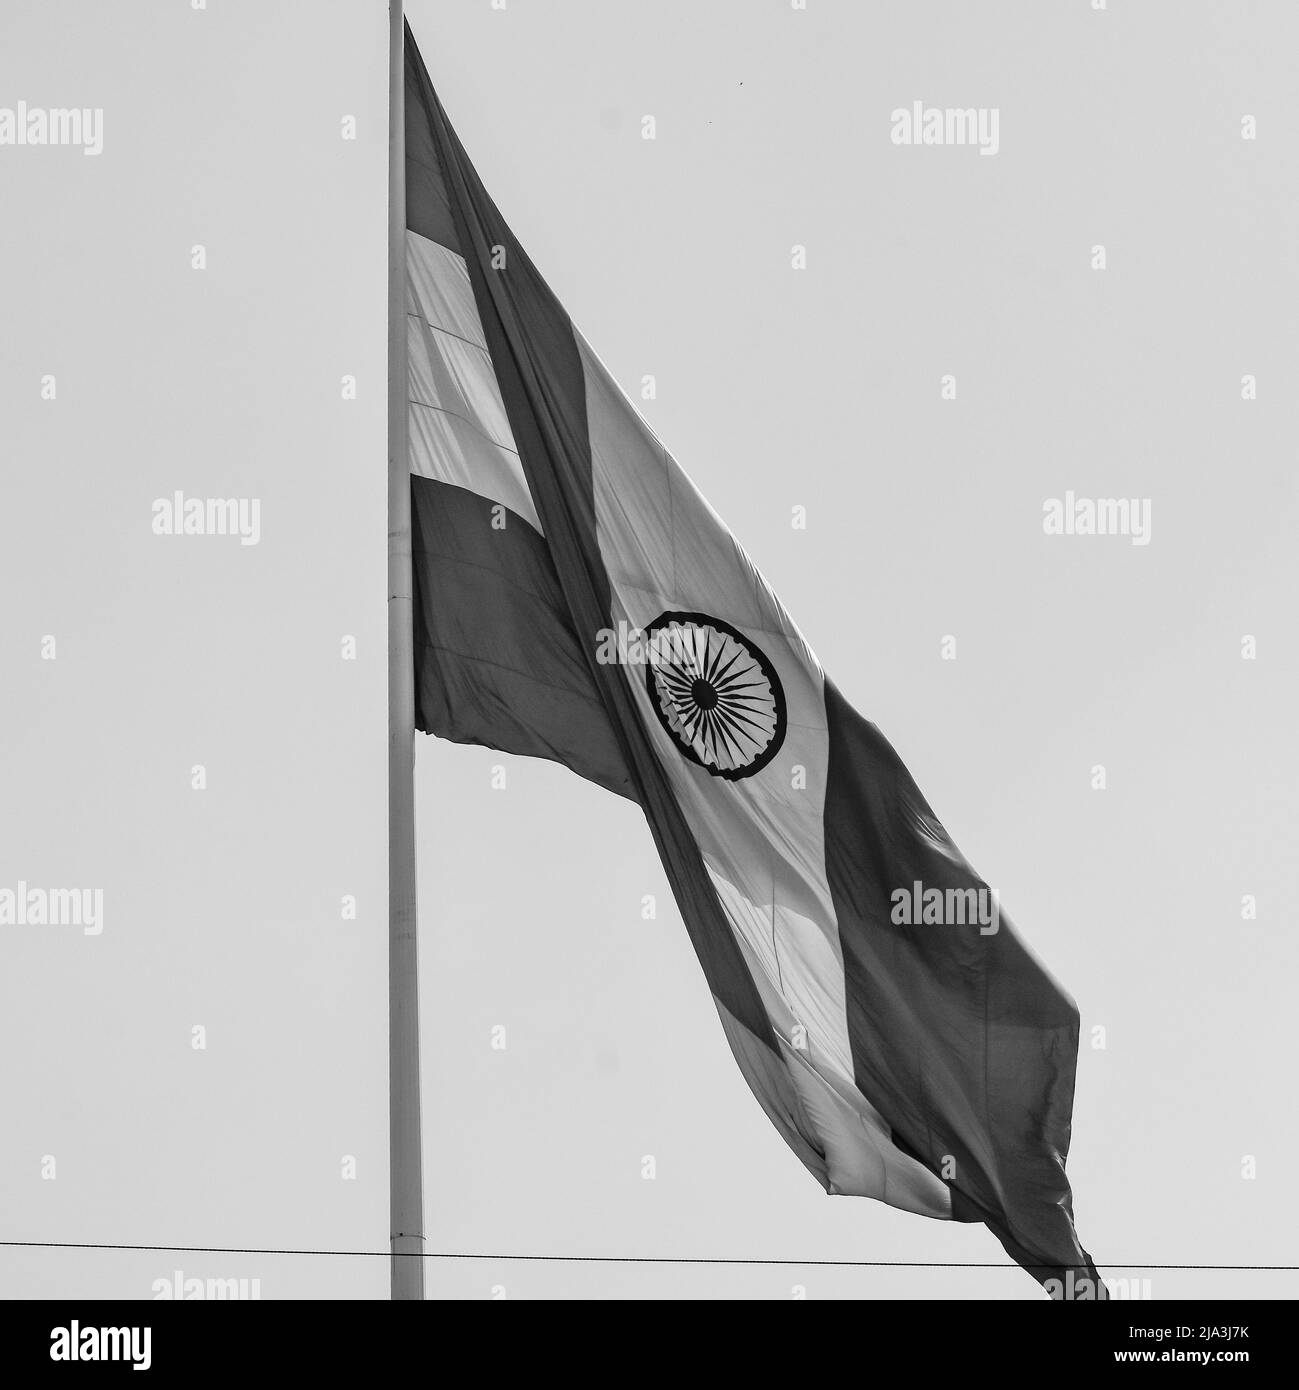 Die indische Flagge fliegt am Connaught Place mit Stolz am blauen Himmel, die indische Flagge flattert, die indische Flagge am Unabhängigkeitstag und der Tag der Republik Indien winkt Stockfoto